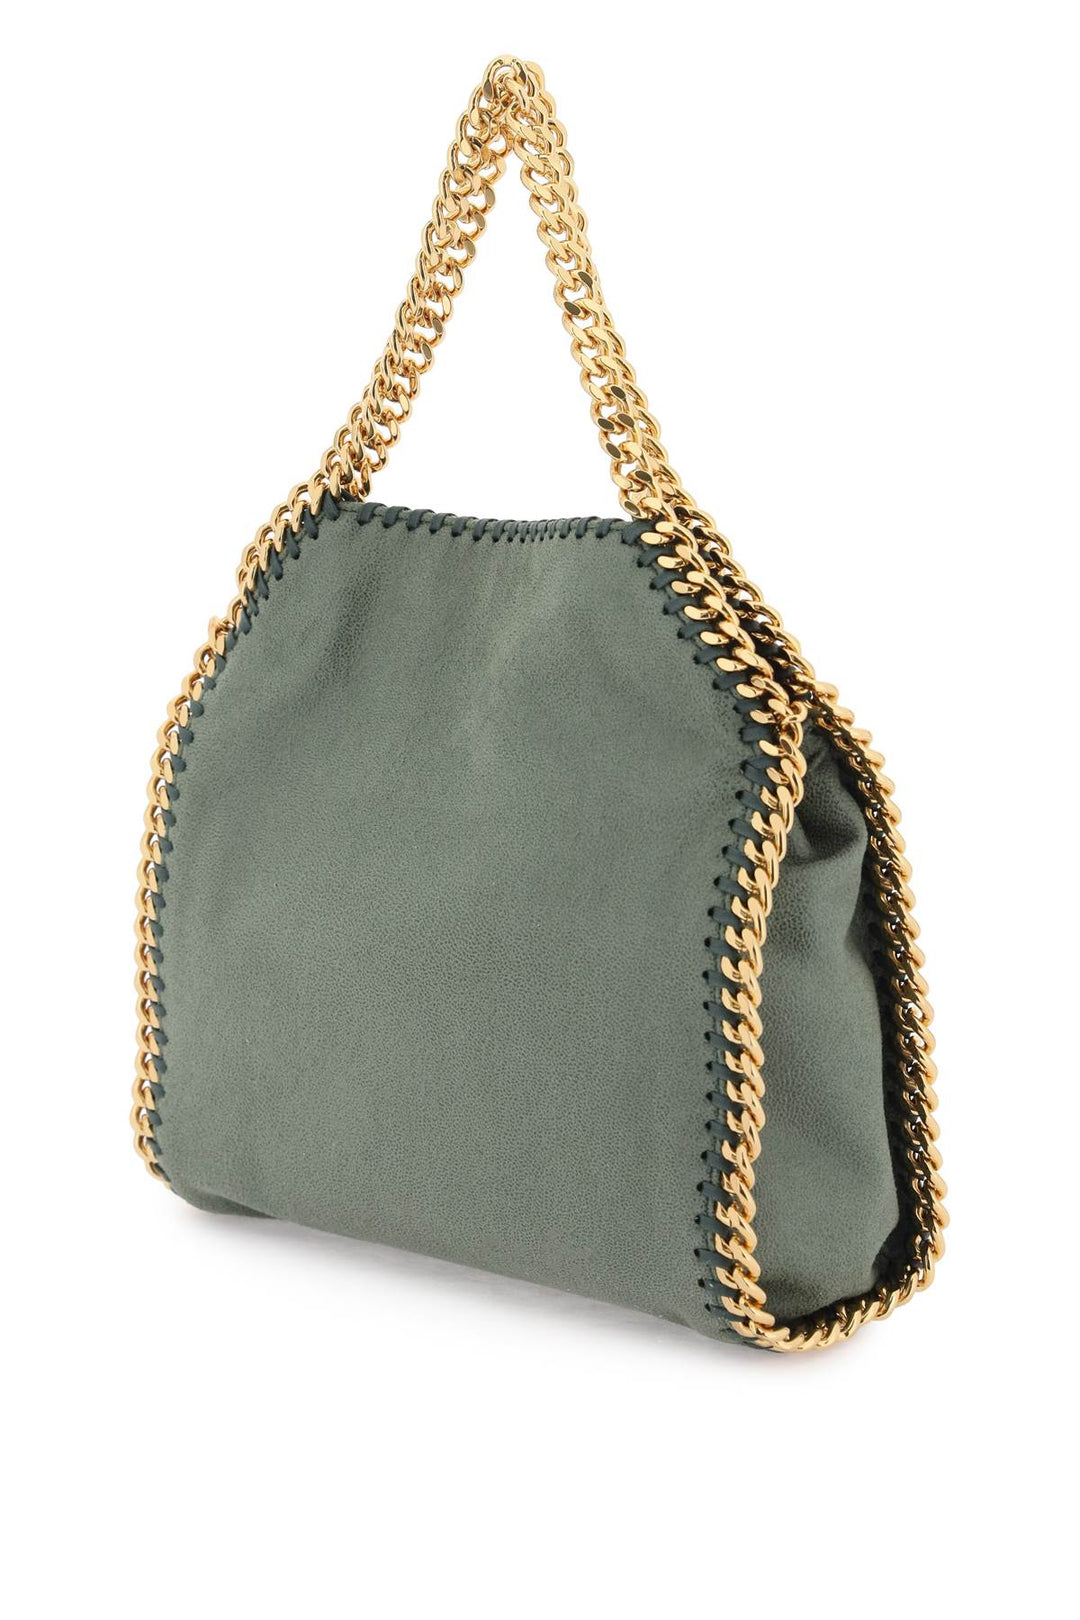 Stella Mc Cartney Falabella Mini Tote Bag   Green